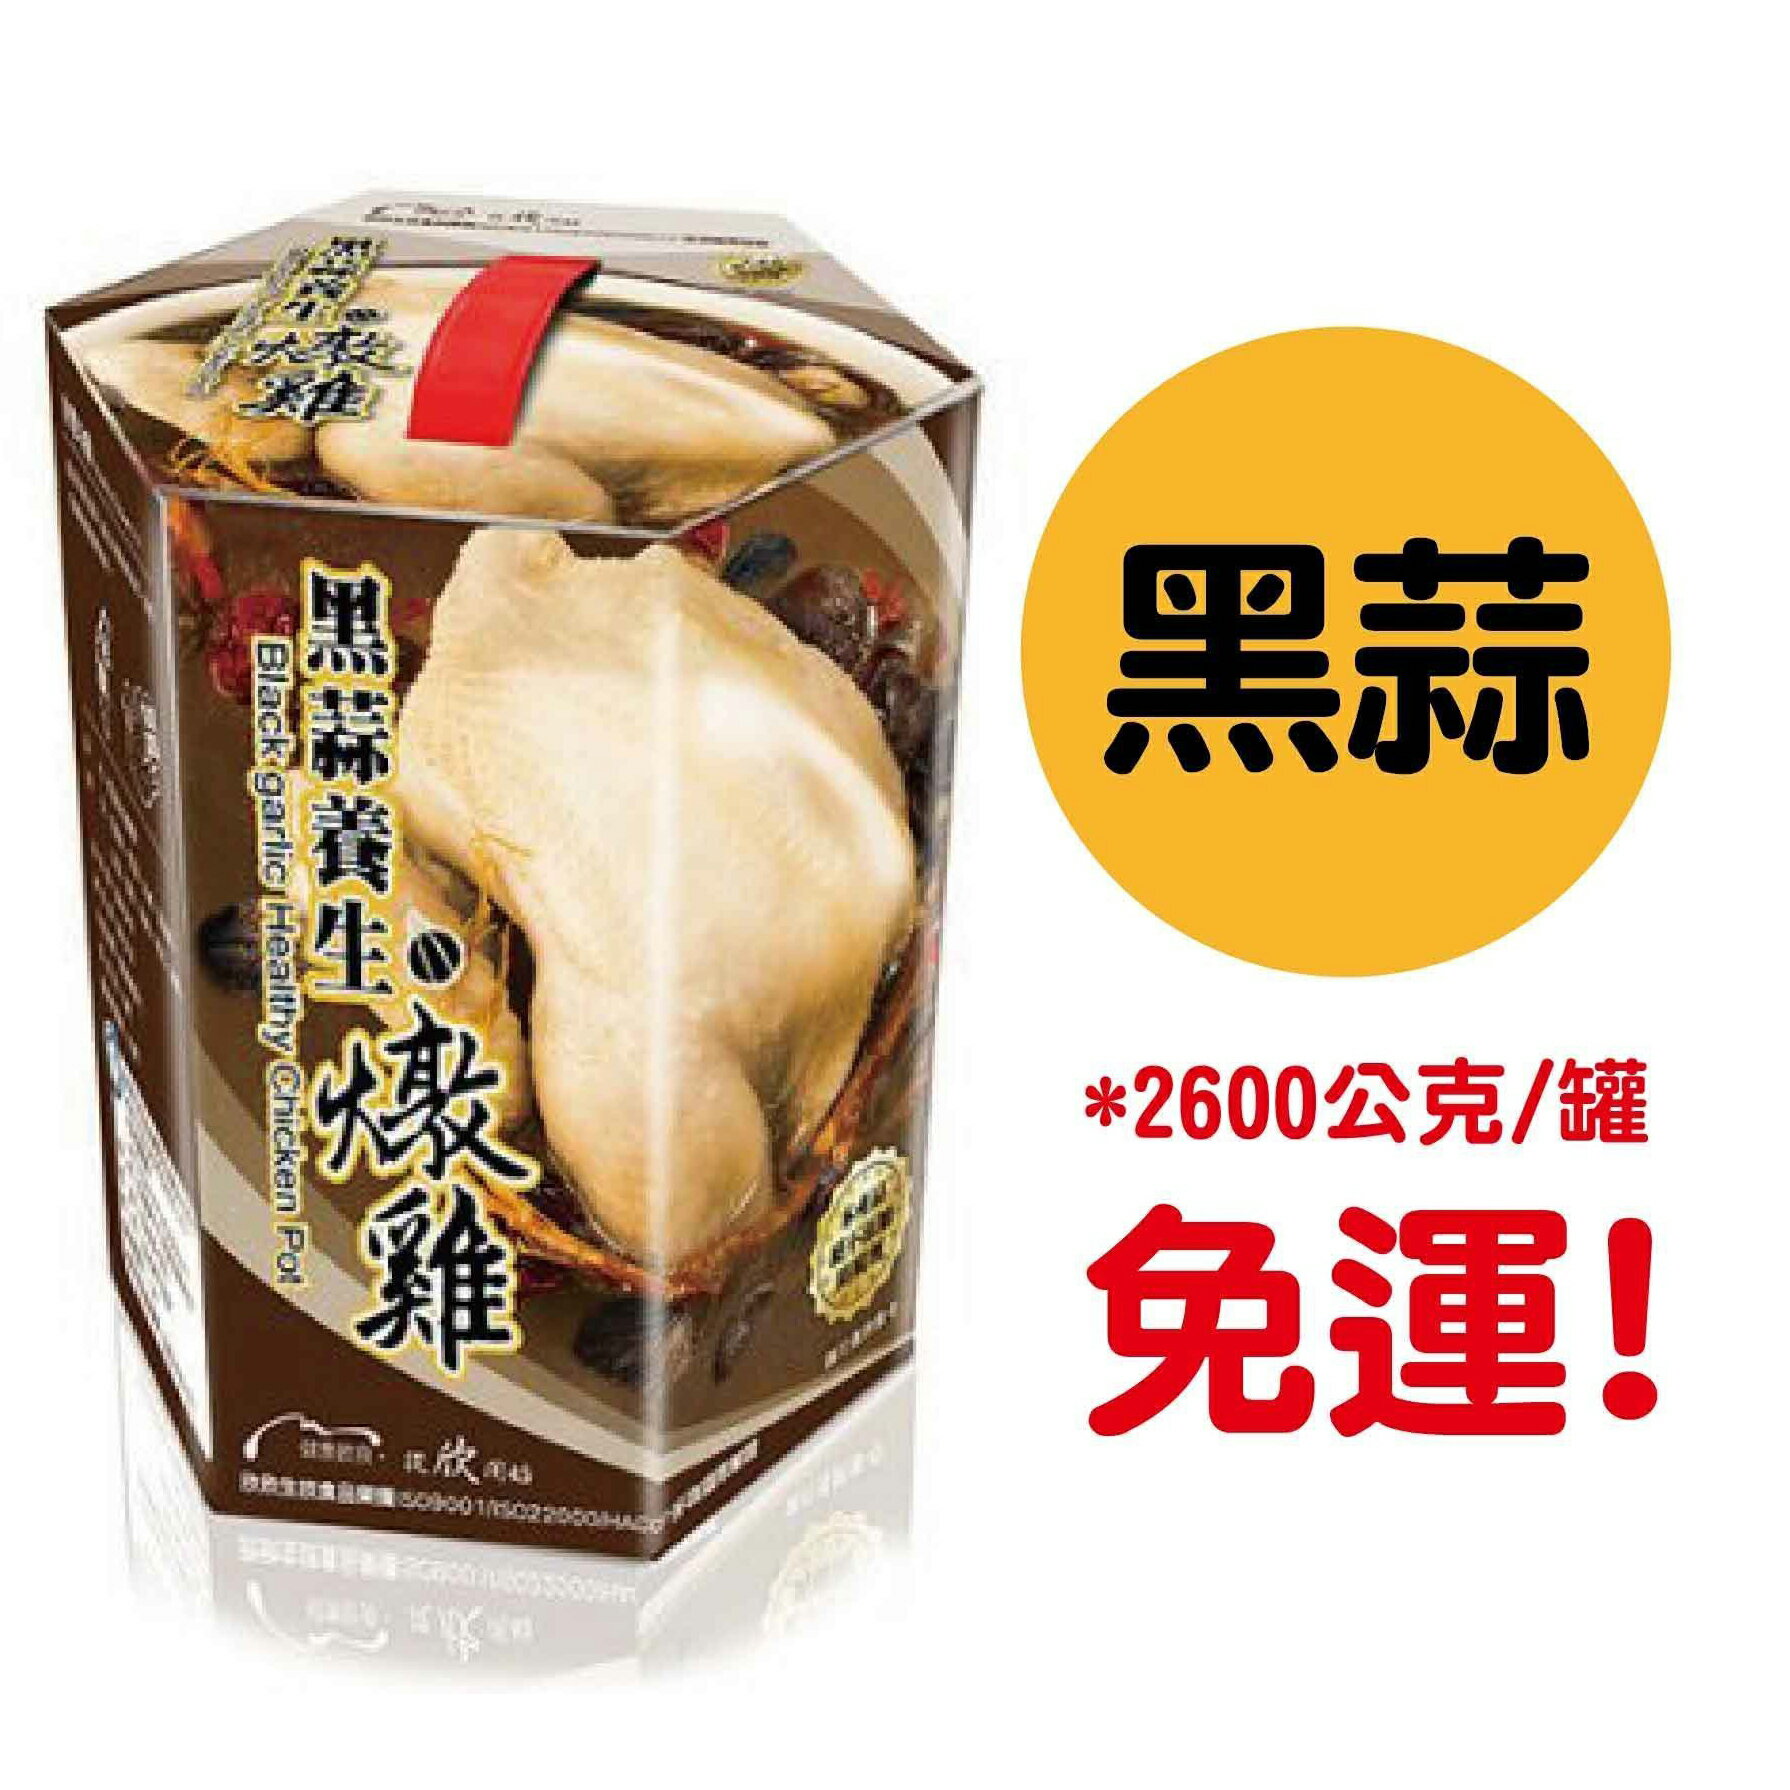 黑蒜養生燉雞(2600g)